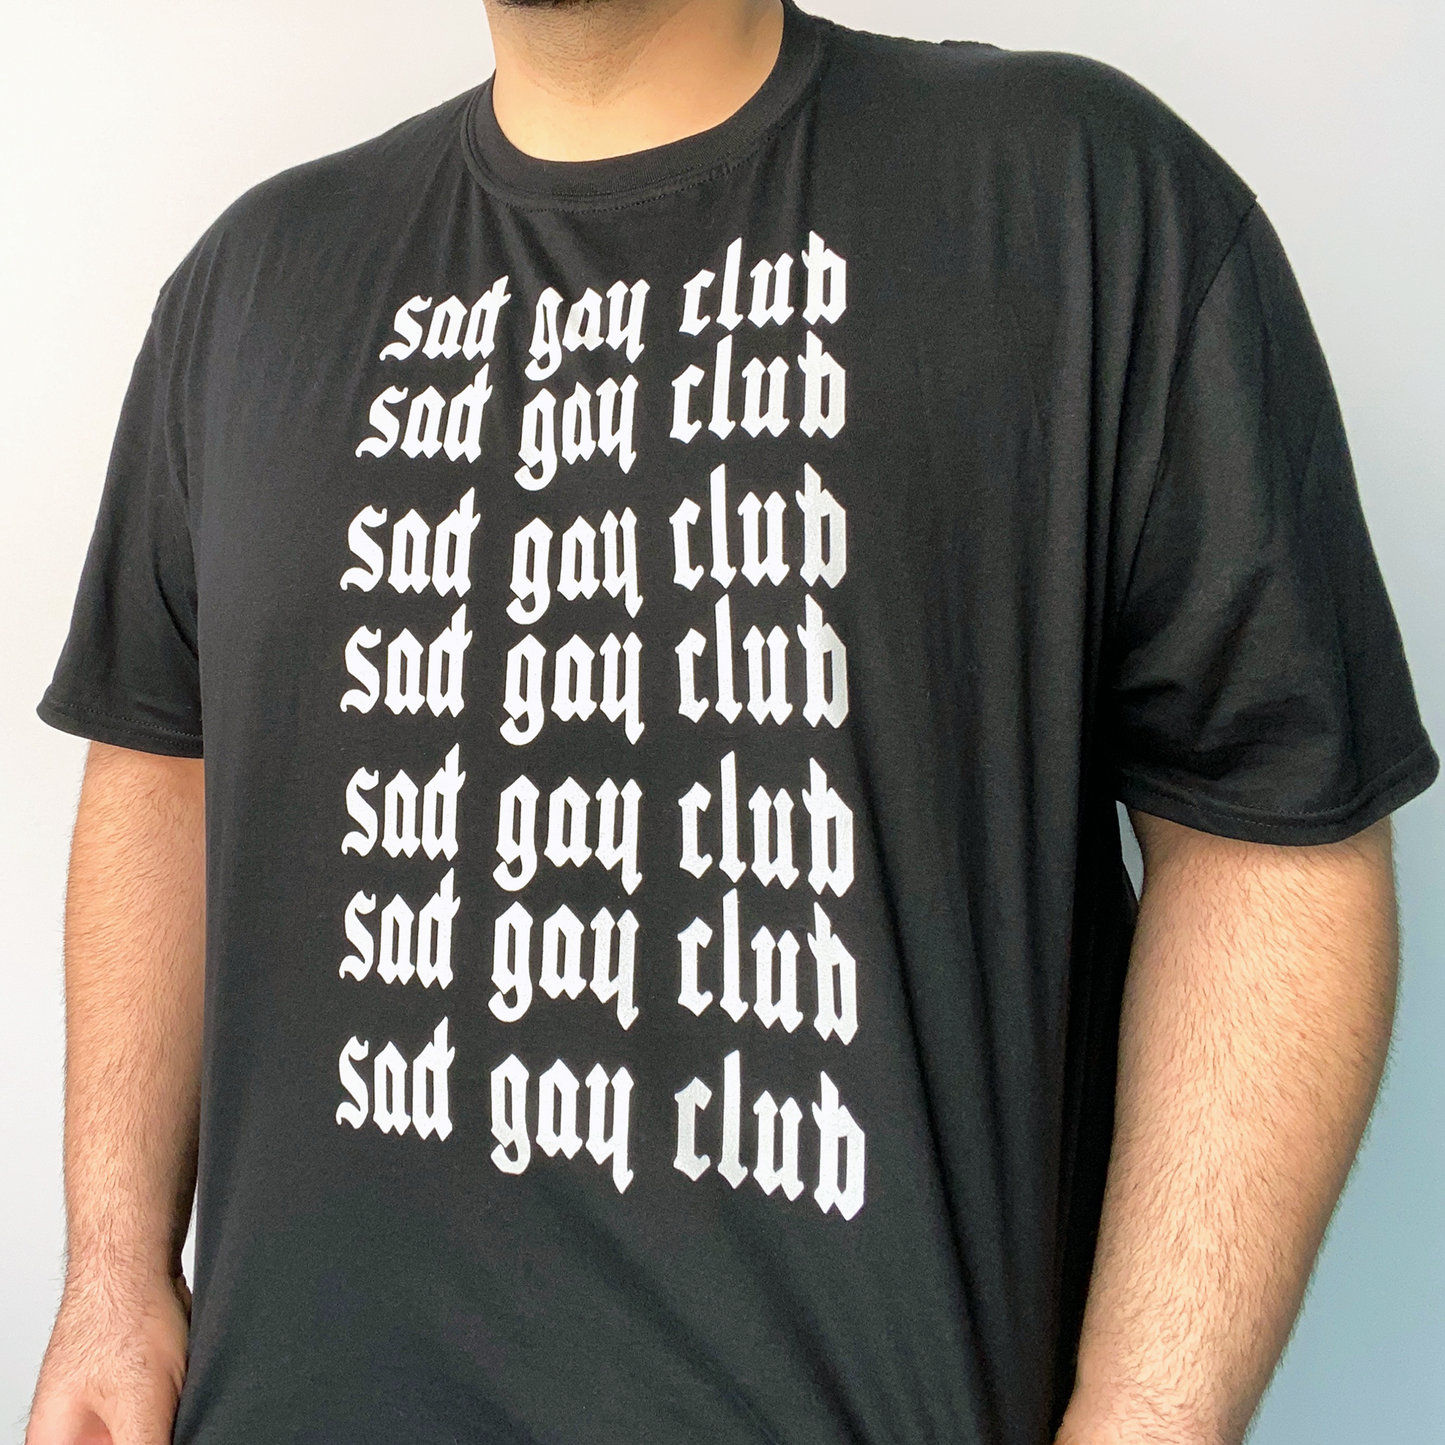 Sad Gay Club Gothy Tee